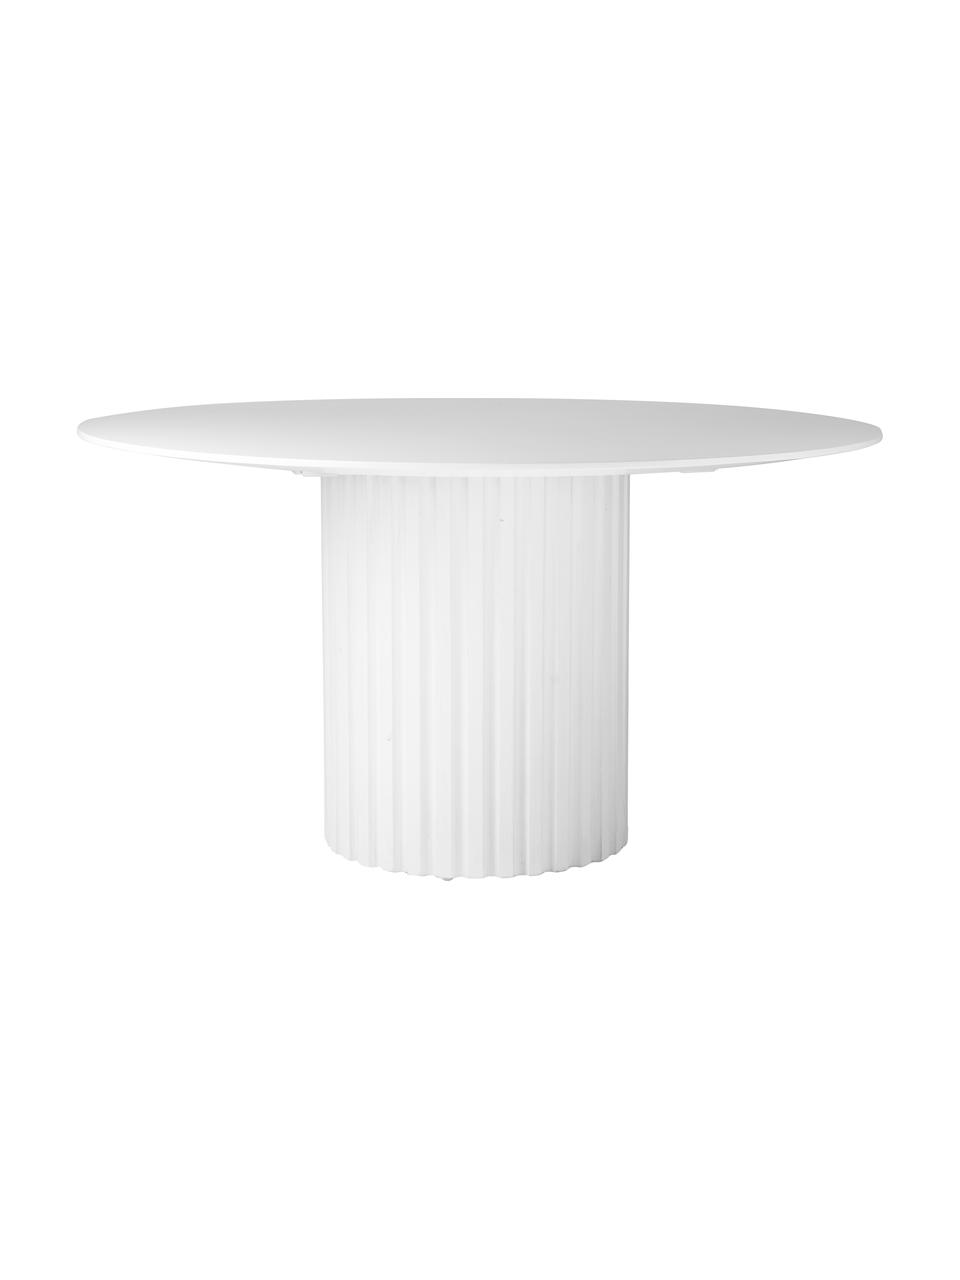 Runder Esstisch Pillar in Weiß mit Rillen-Dekor, Sungkai-Holz, Mitteldichte Holzfaserplatte (MDF), Weiß, Ø 140 x H 75 cm